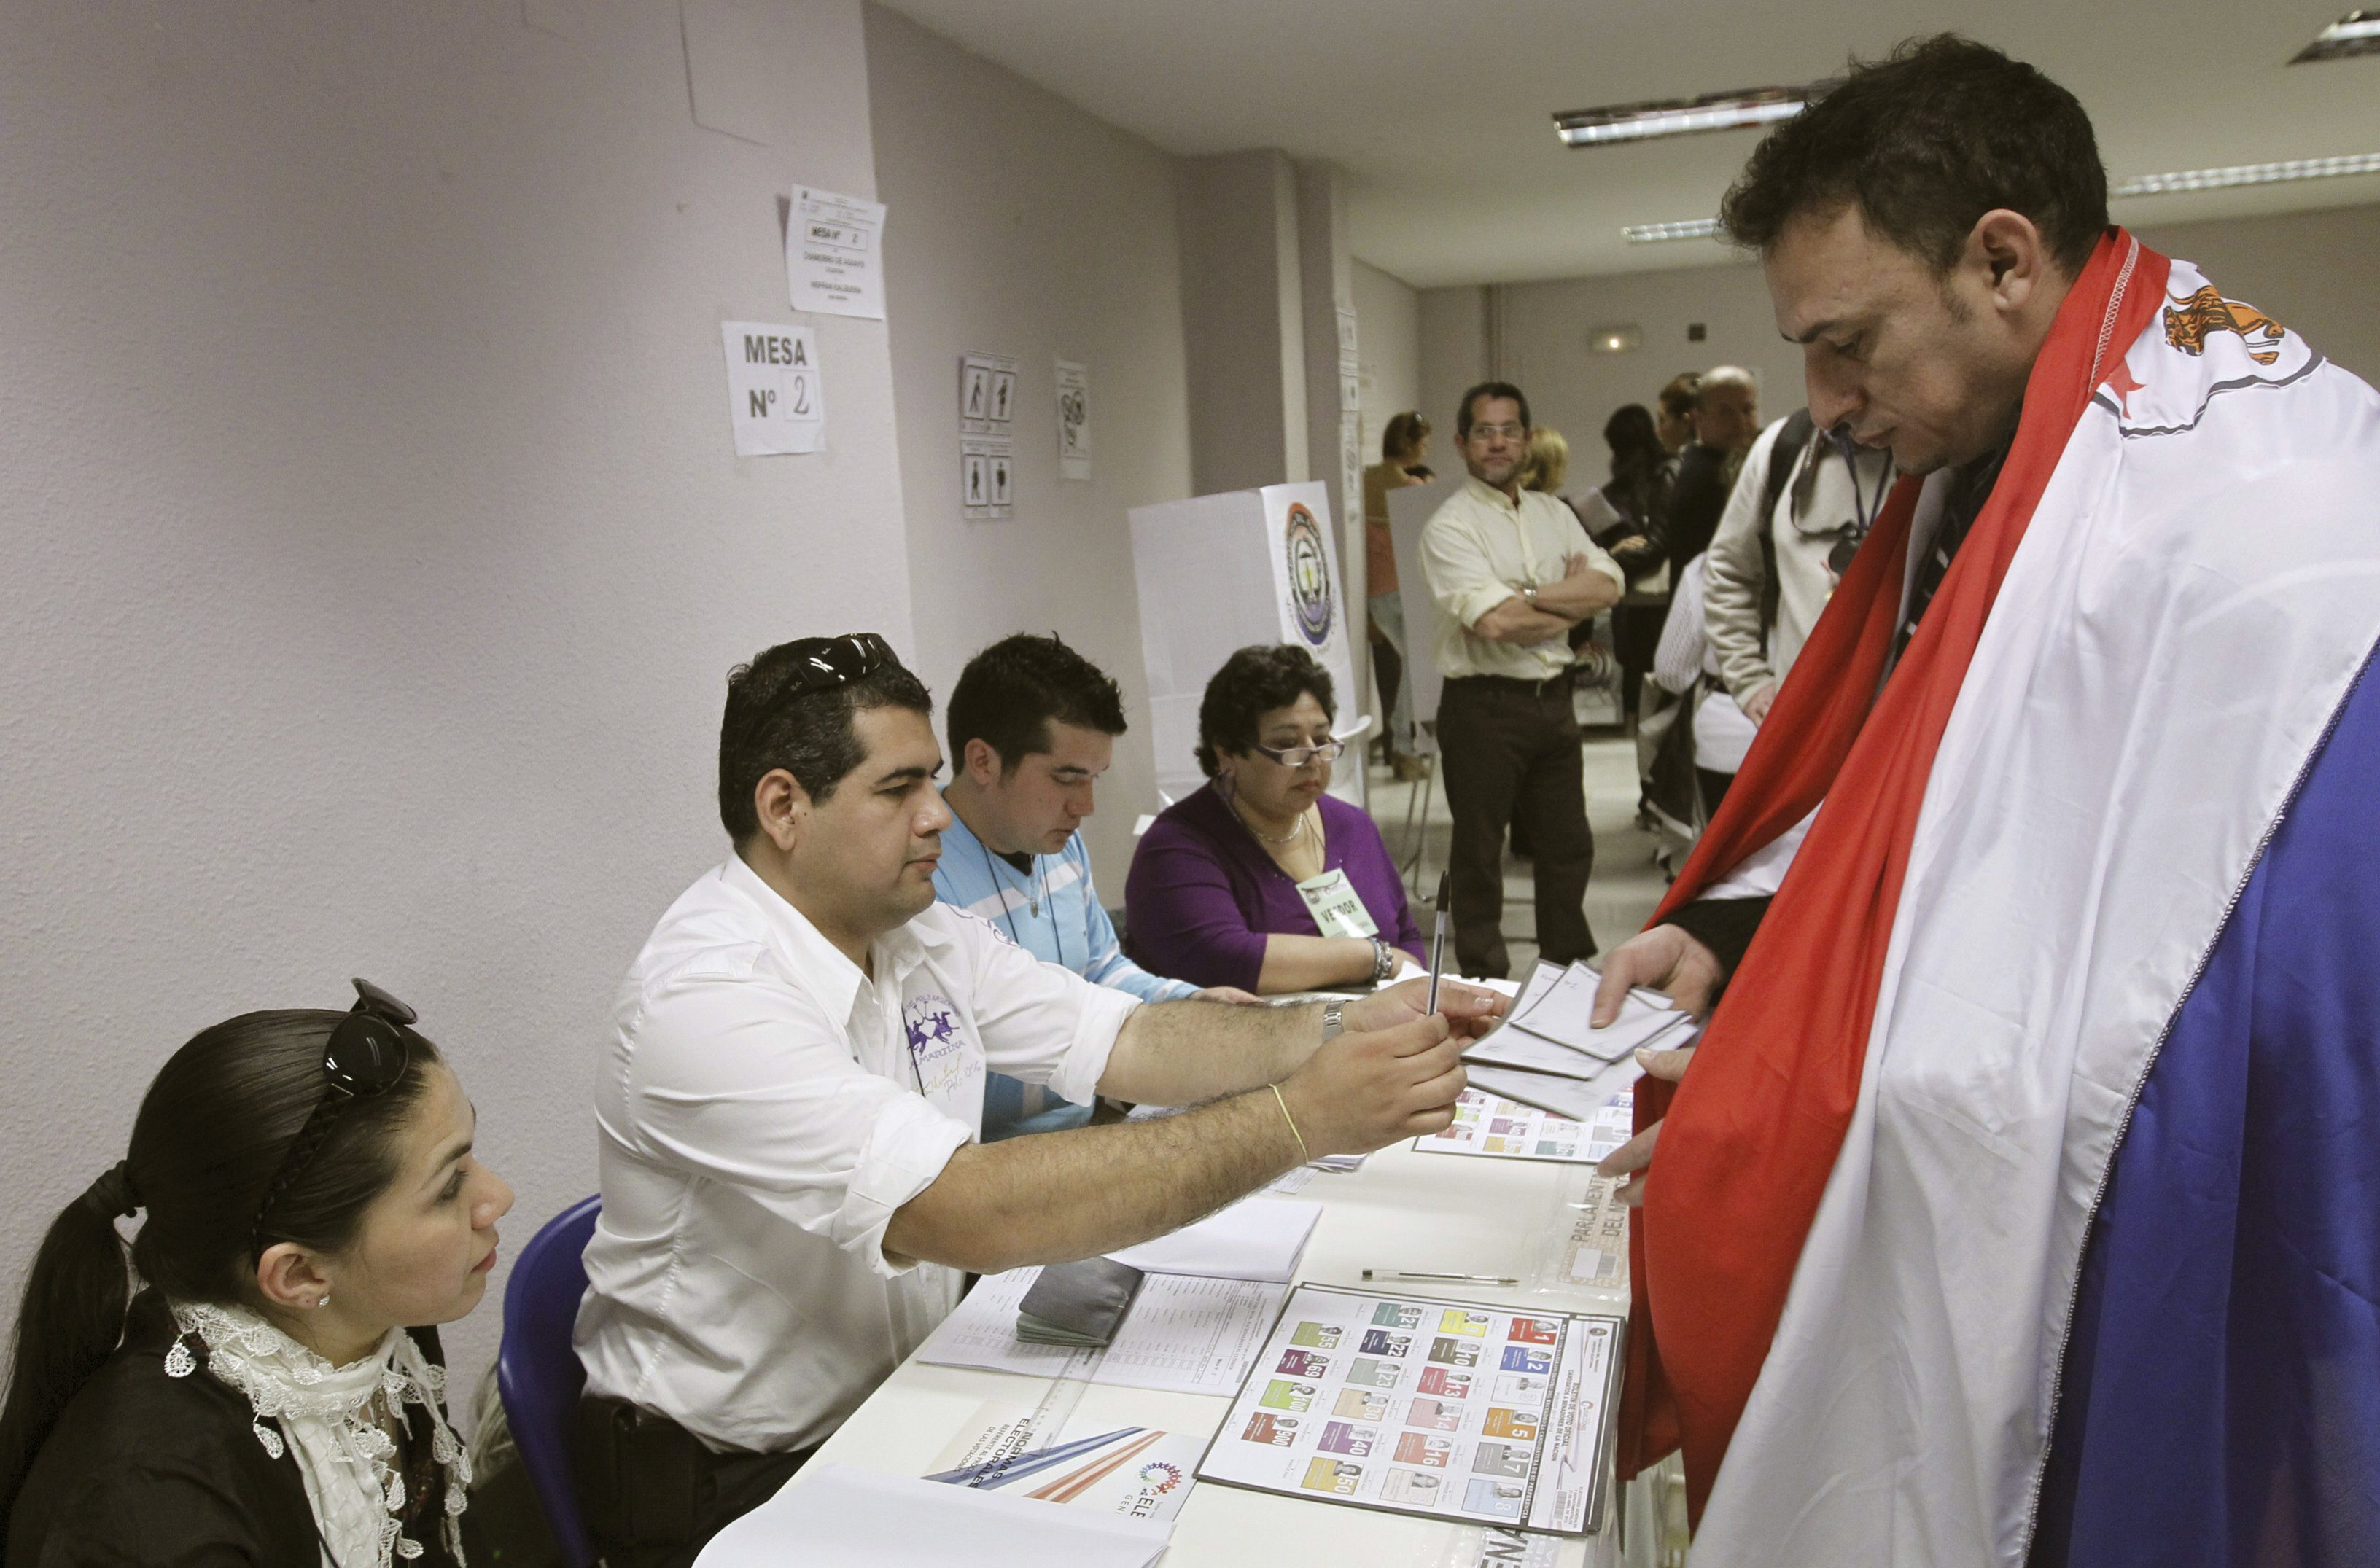 El próximo 22 de abril los paraguayos sufragarán para elegir al nuevo presidente, vicepresidente y demás autoridades del Estado.